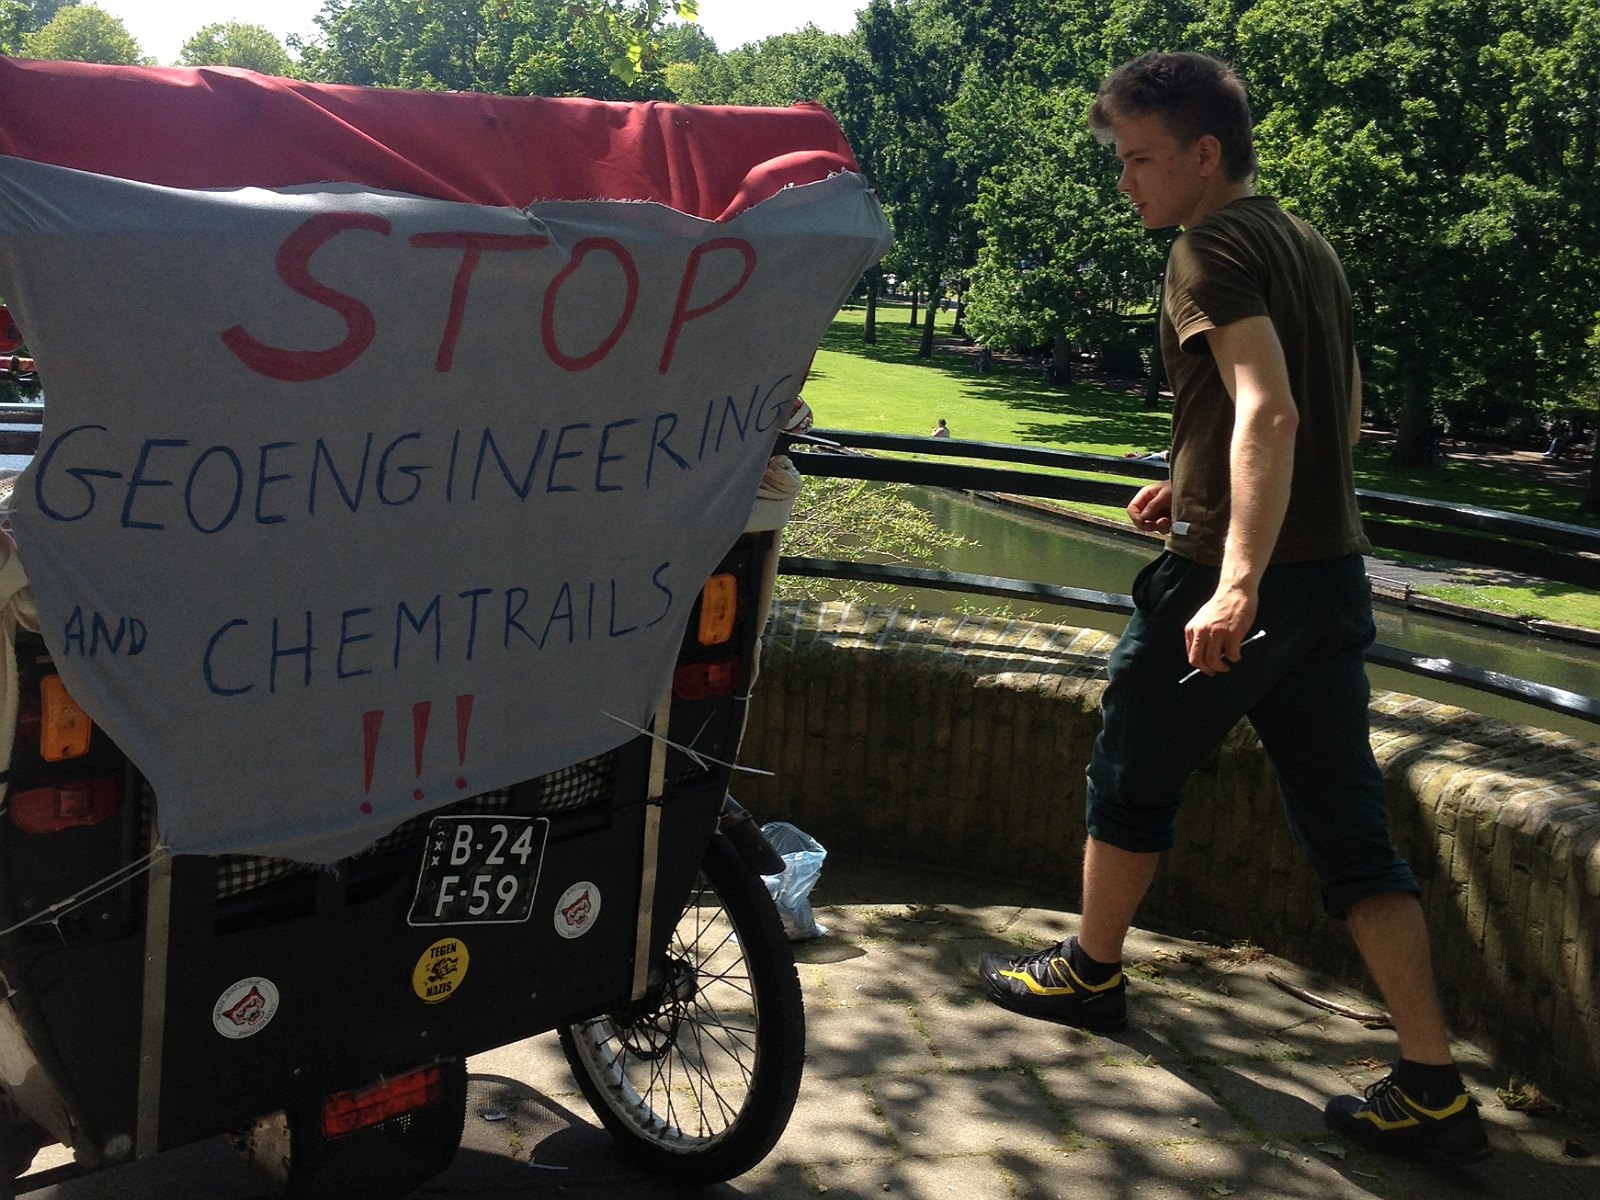 5. Przygotowywanie baneru na rikszę dla mojego protestu przeciwko smugom chemicznym ('chemtrails') i geoinżynierii, Amsterdam 4.06.2015.